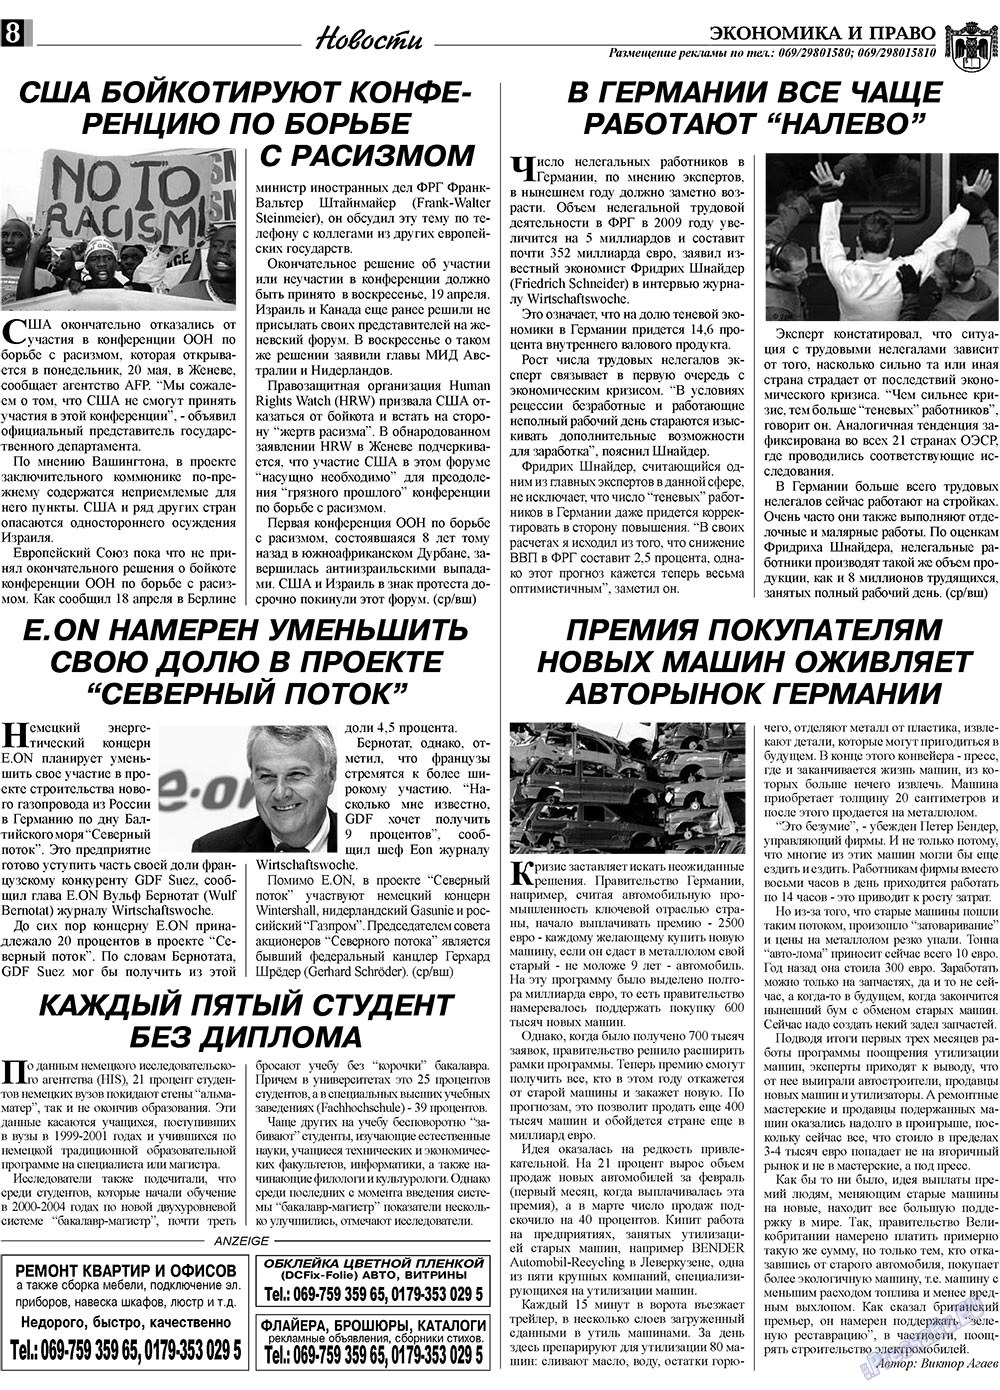 Экономика и право, газета. 2009 №5 стр.8